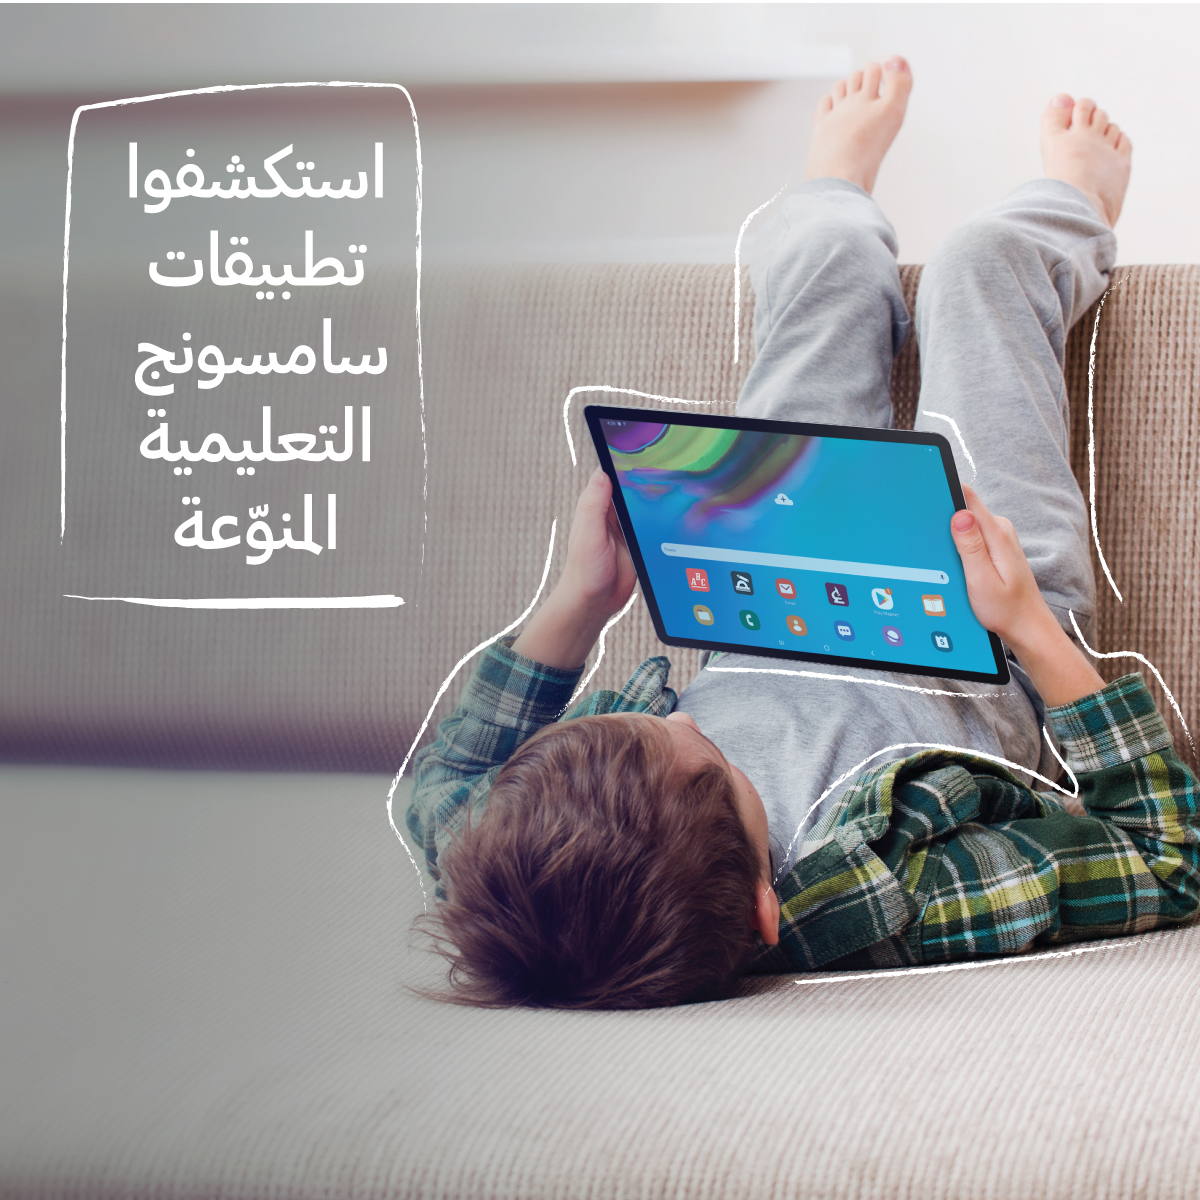 الهواتف الذكية والأجهزة اللوحية من &سامسونج إلكترونيكس& أفضل الخيارات للتعلم والتعليم الإلكتروني في الأردن